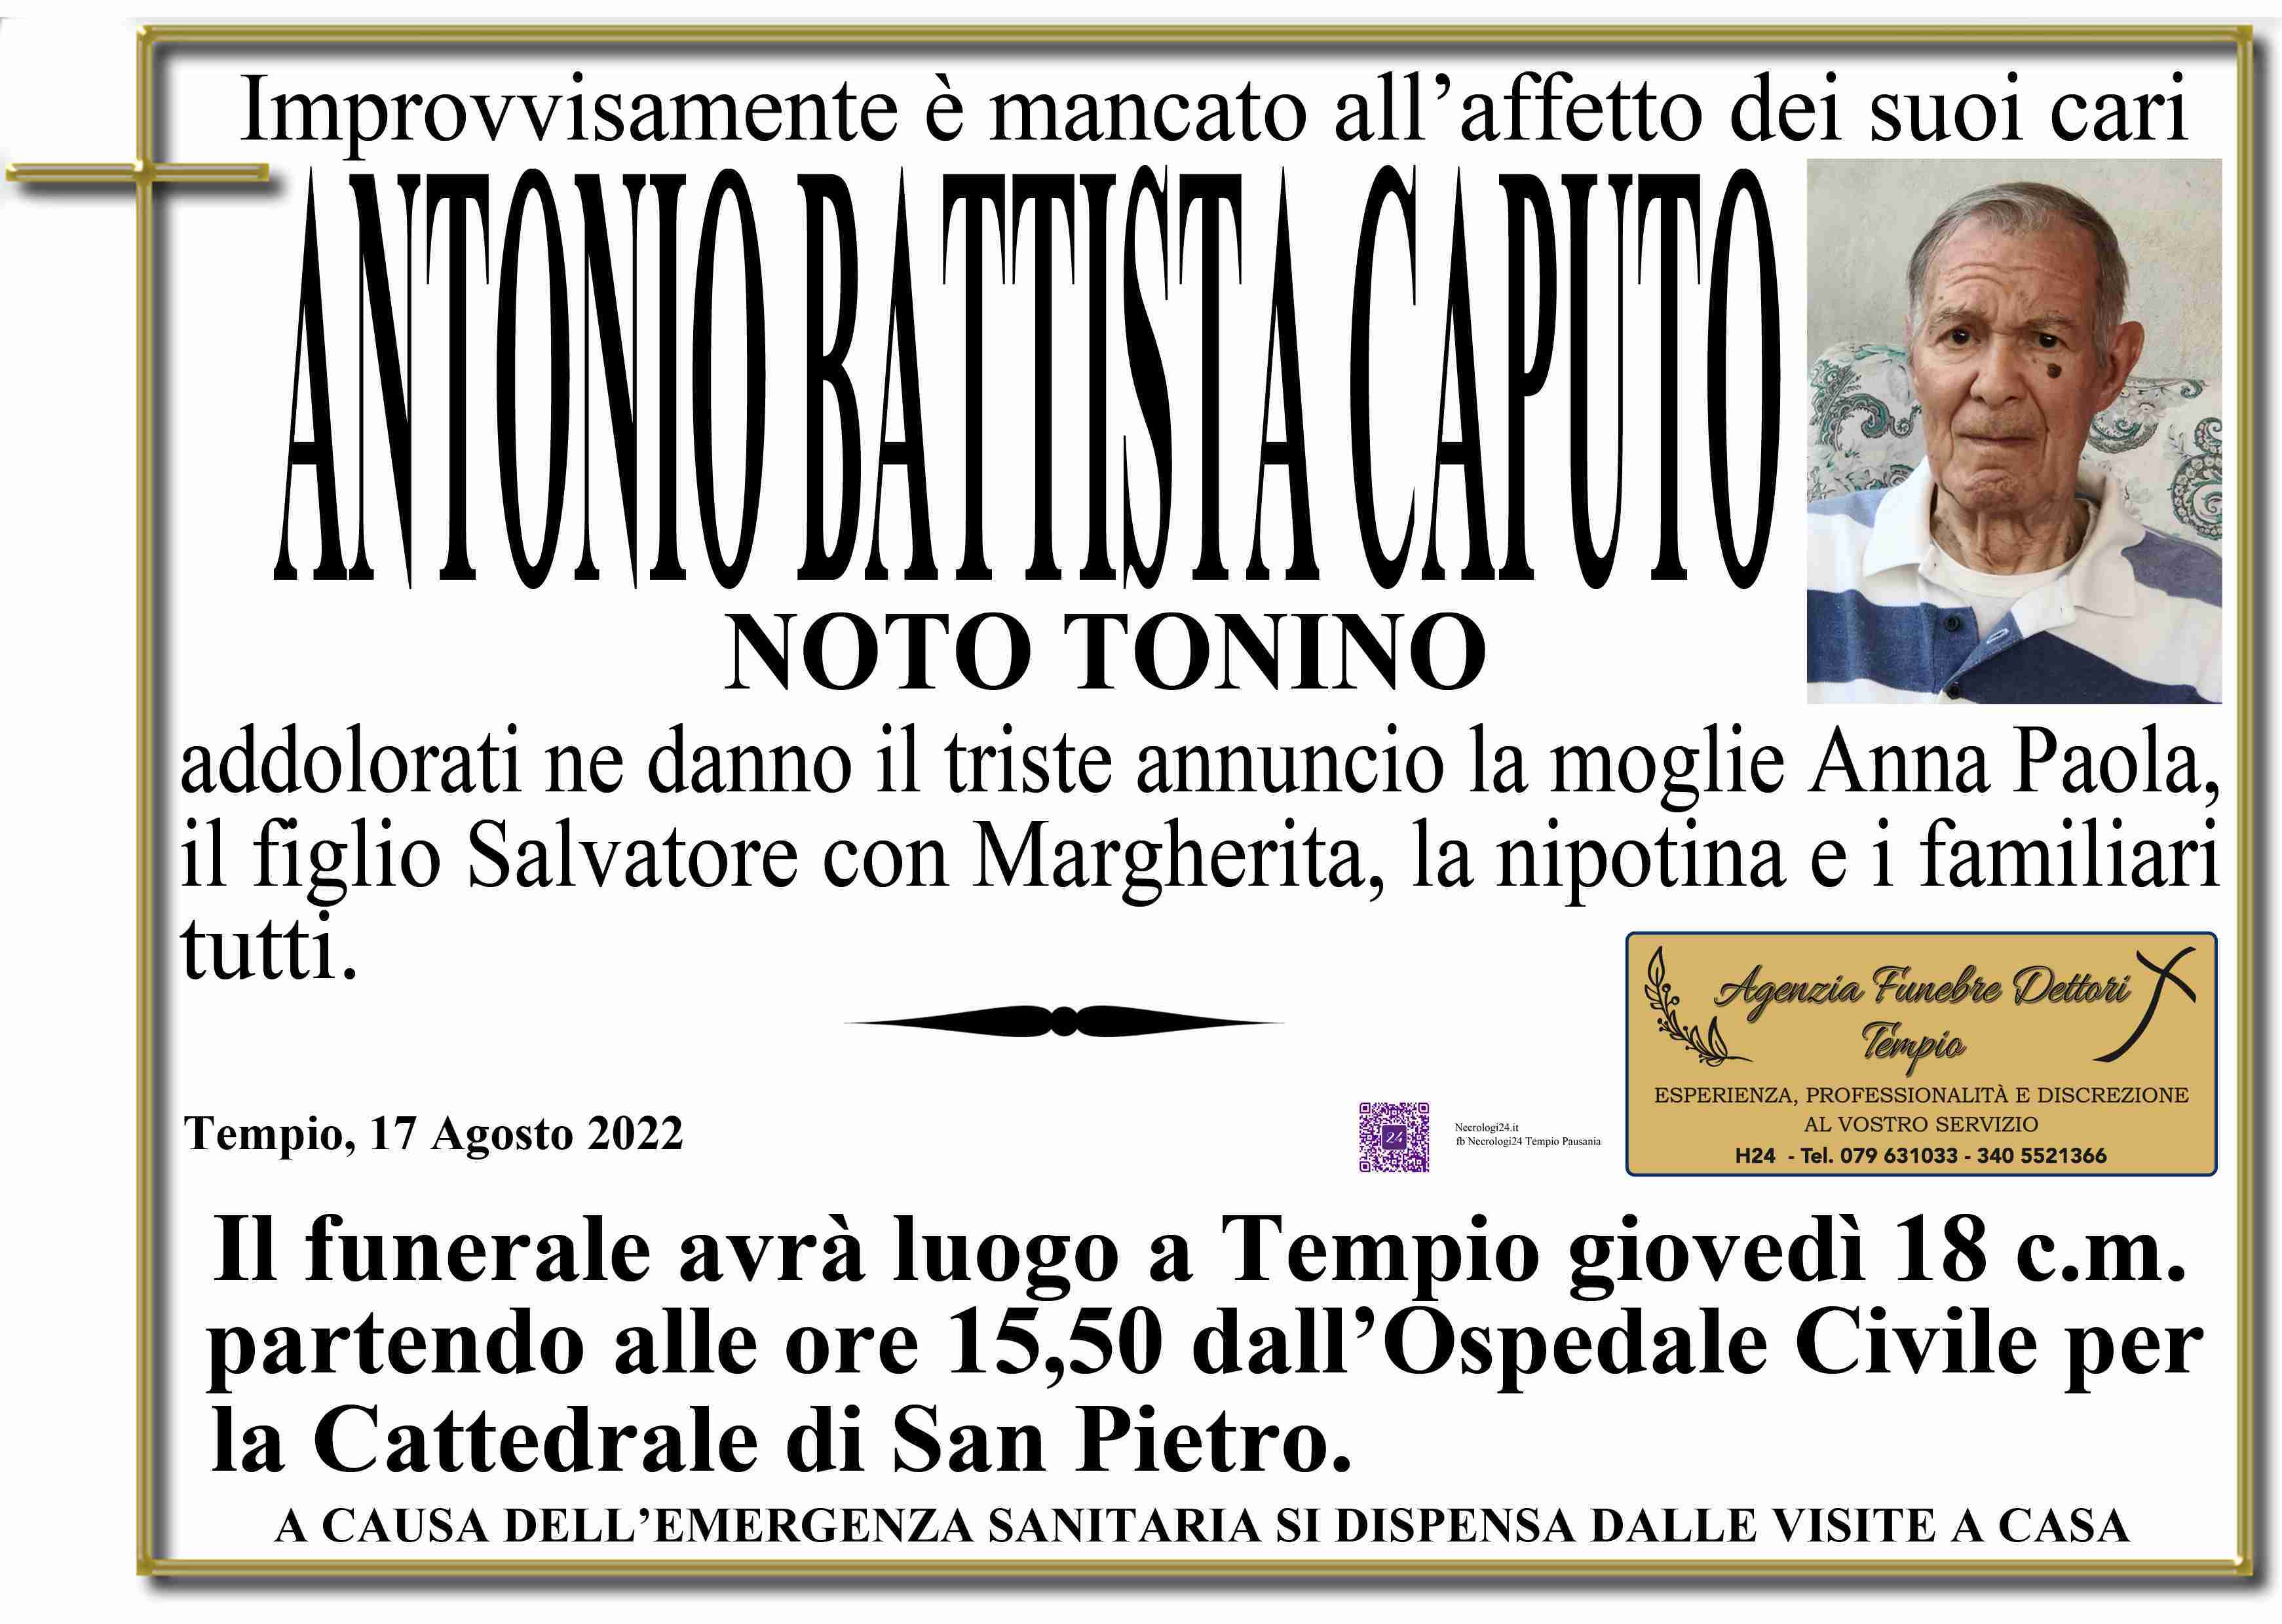 Antonio Battista Caputo